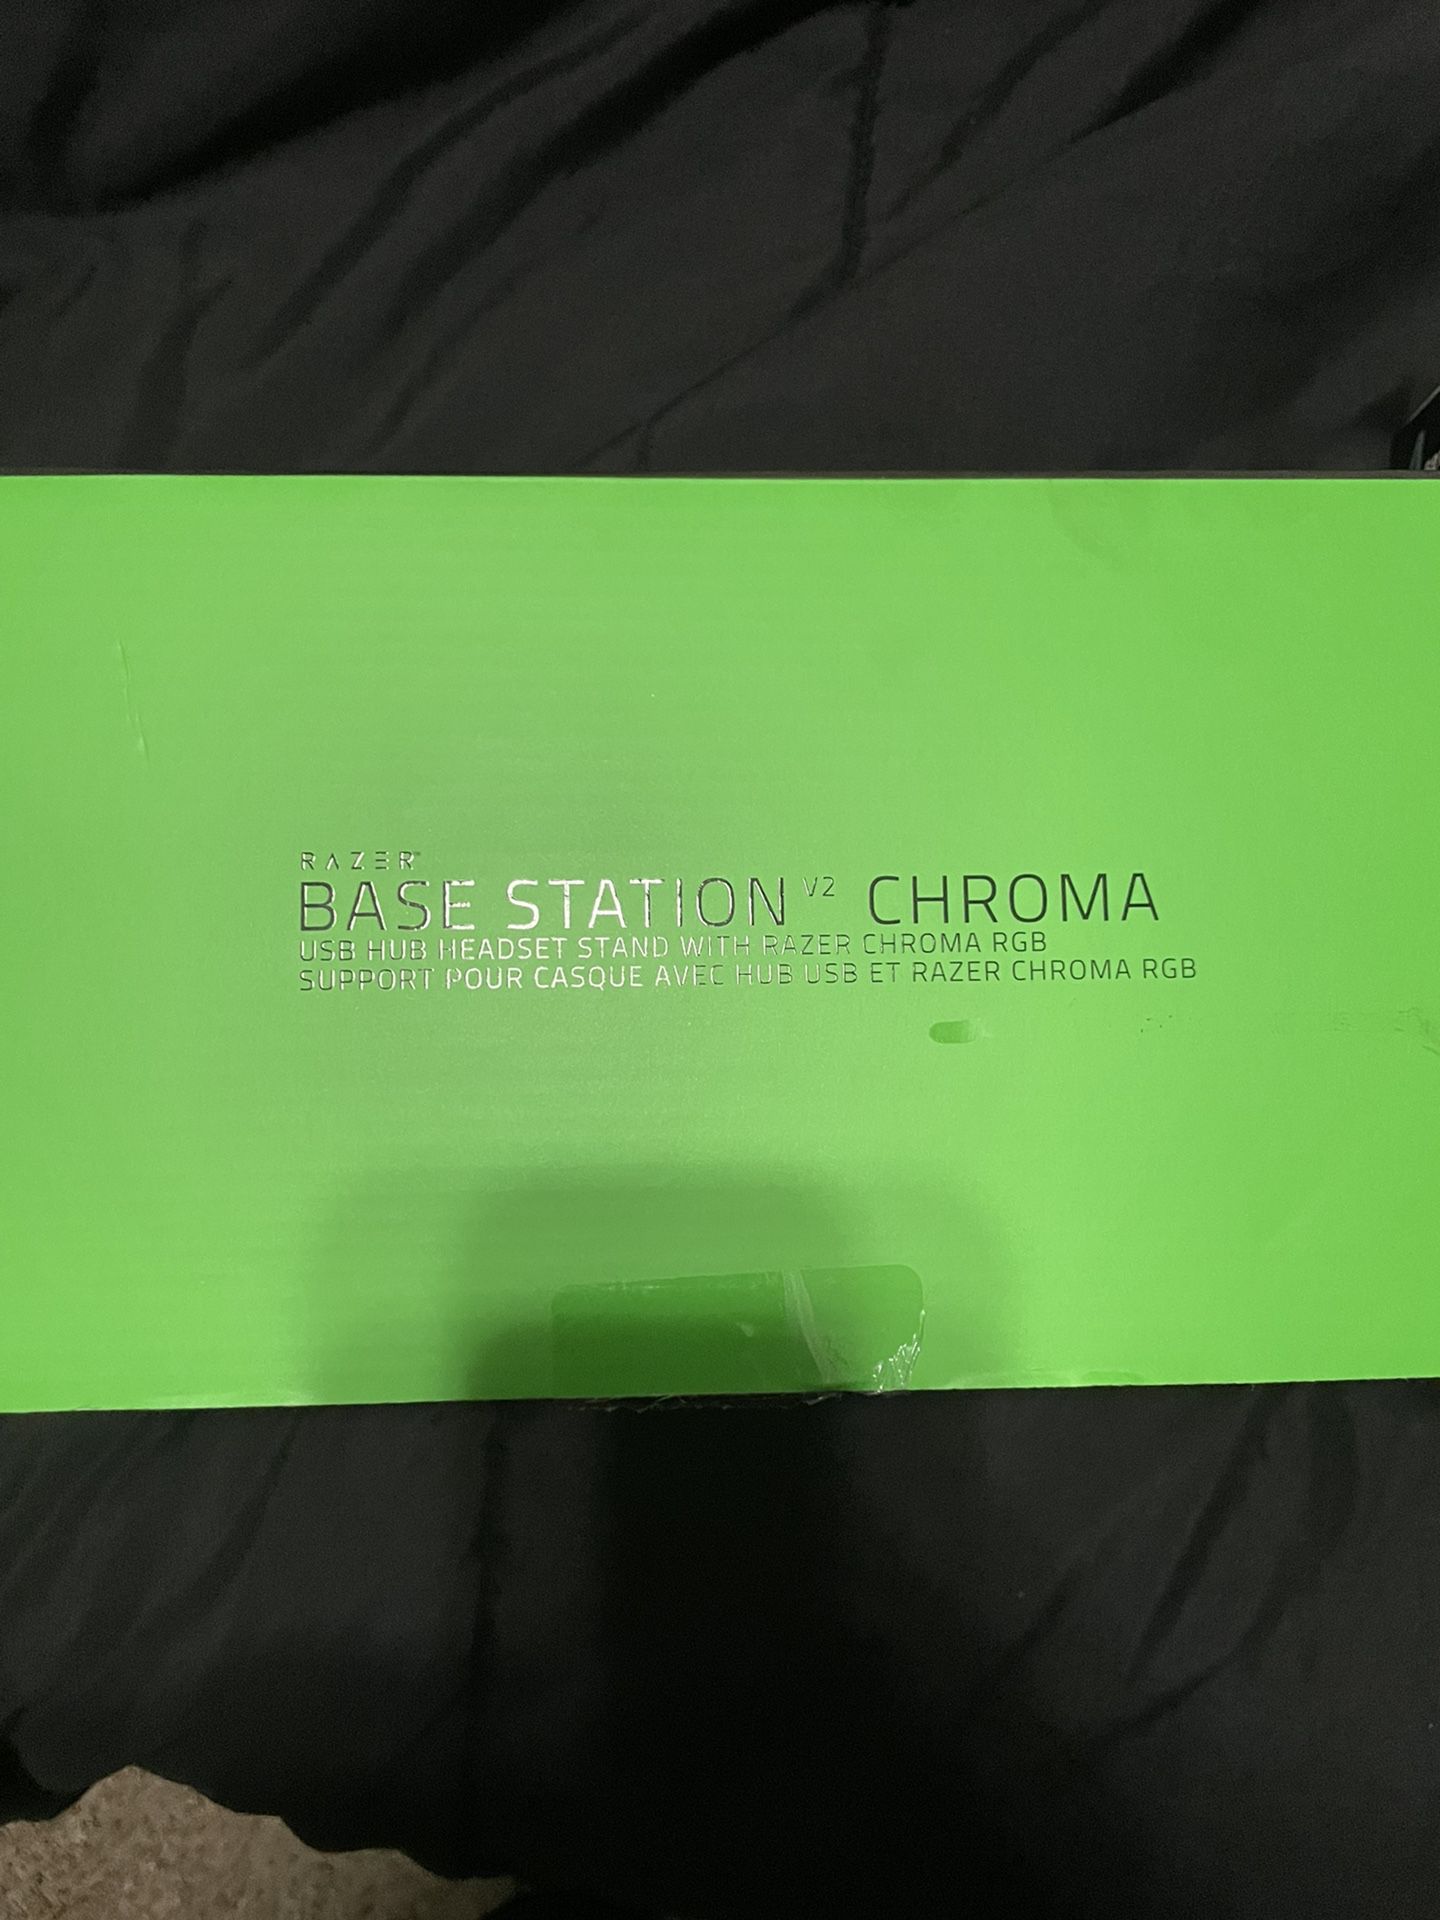 Base Station v2 Chroma